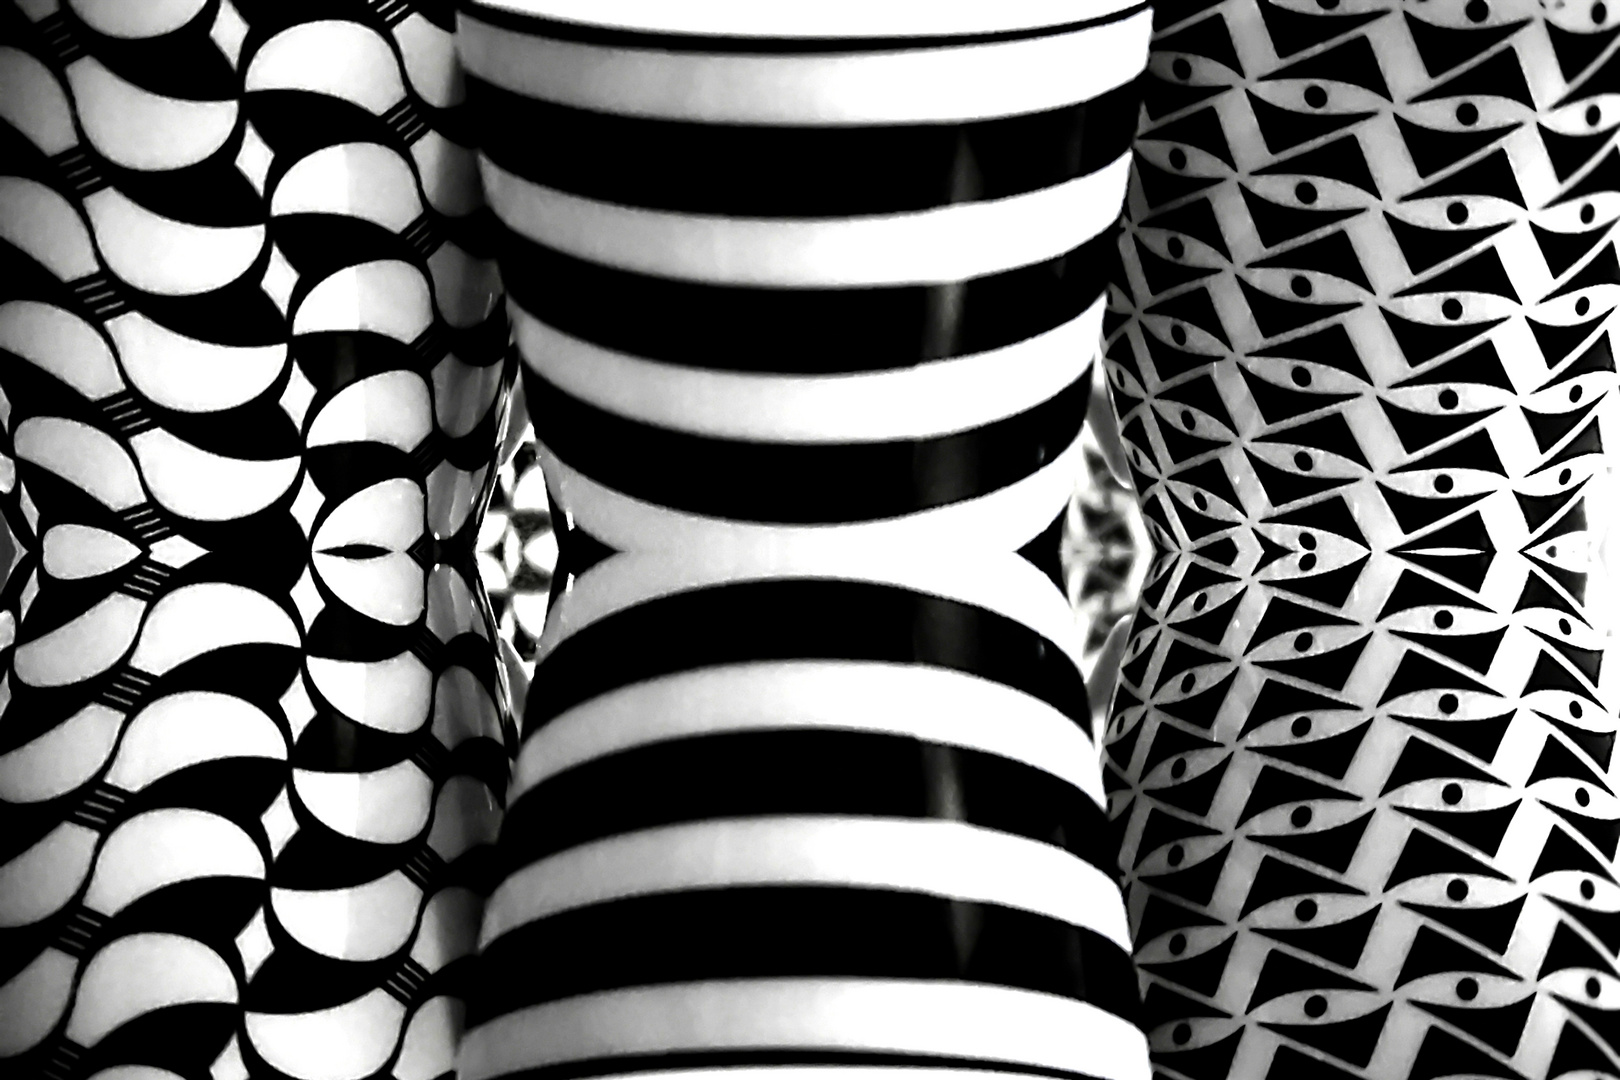 Dienstag ist Spiegeltag - Spiegel-Experiment mit schwarz-weiß gemusterten Tassen